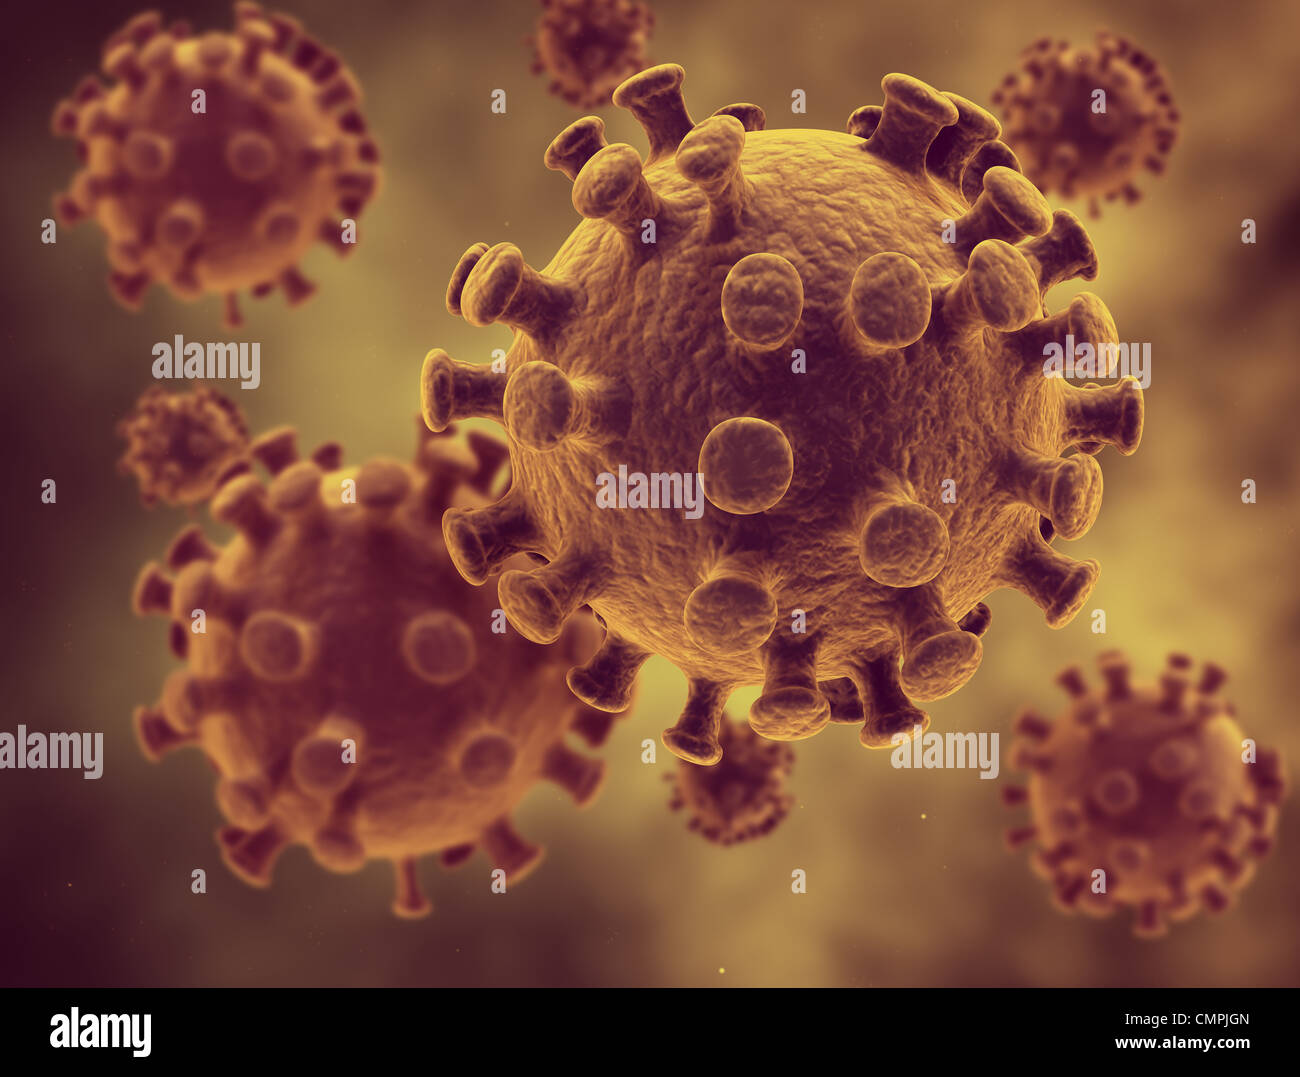 Illustration of virus cells Stock Photo